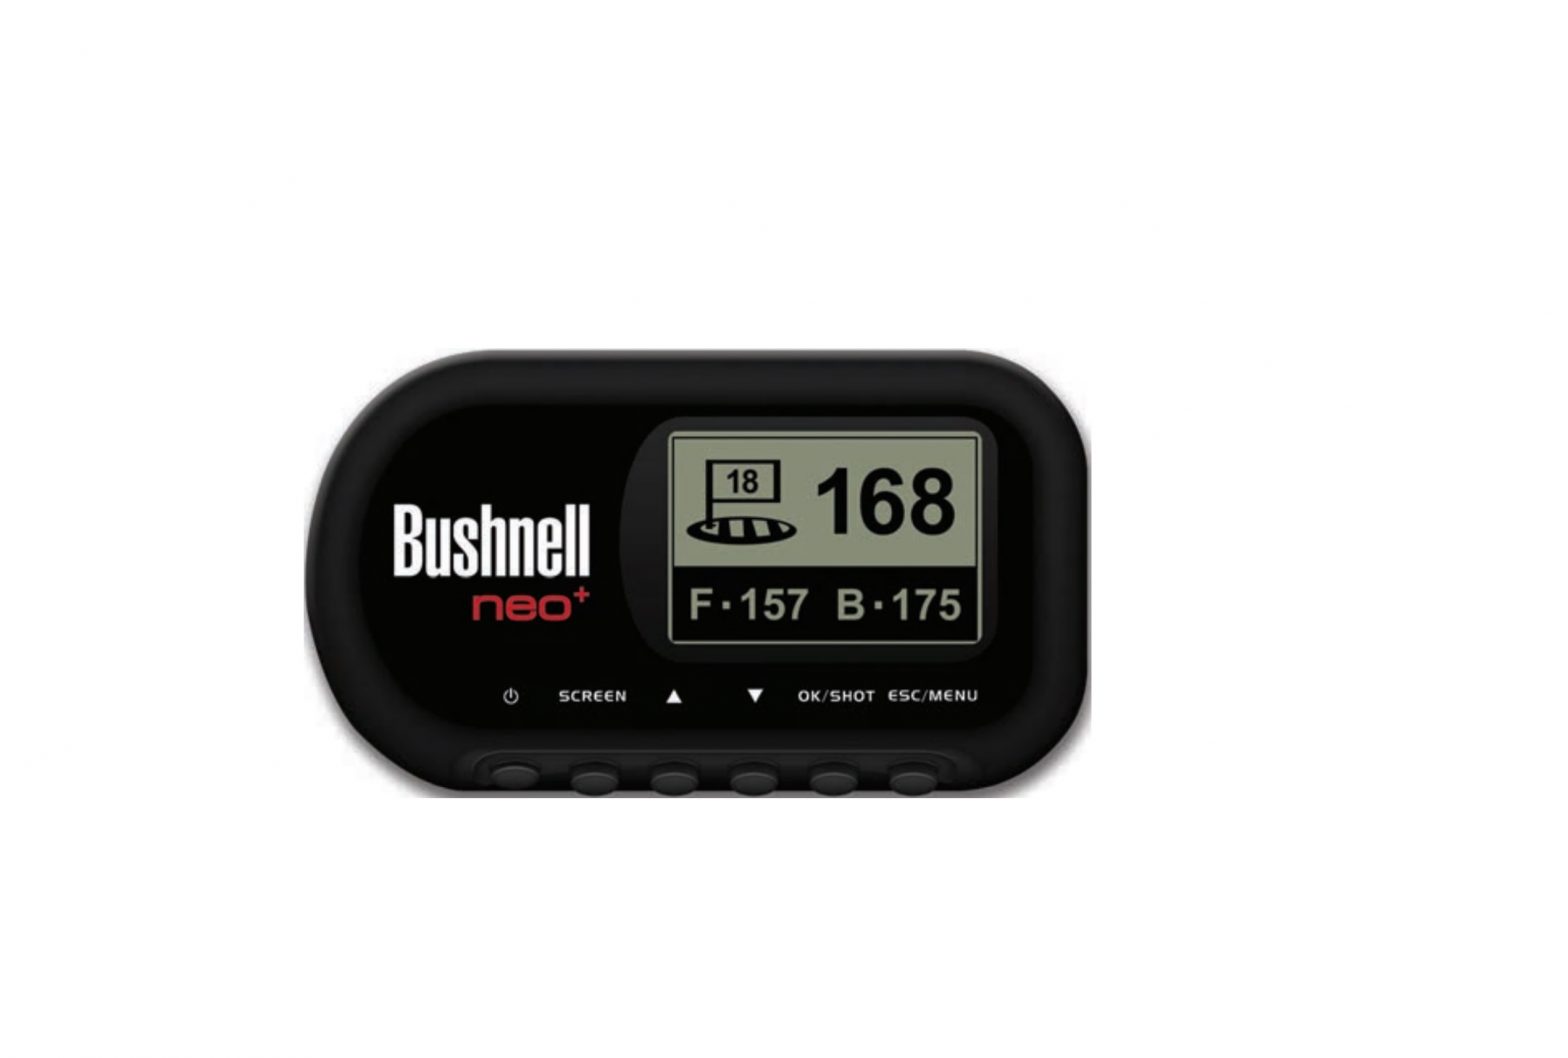 Bushnell 368150 NEO+ Golf GPS Rangefinder User Manual